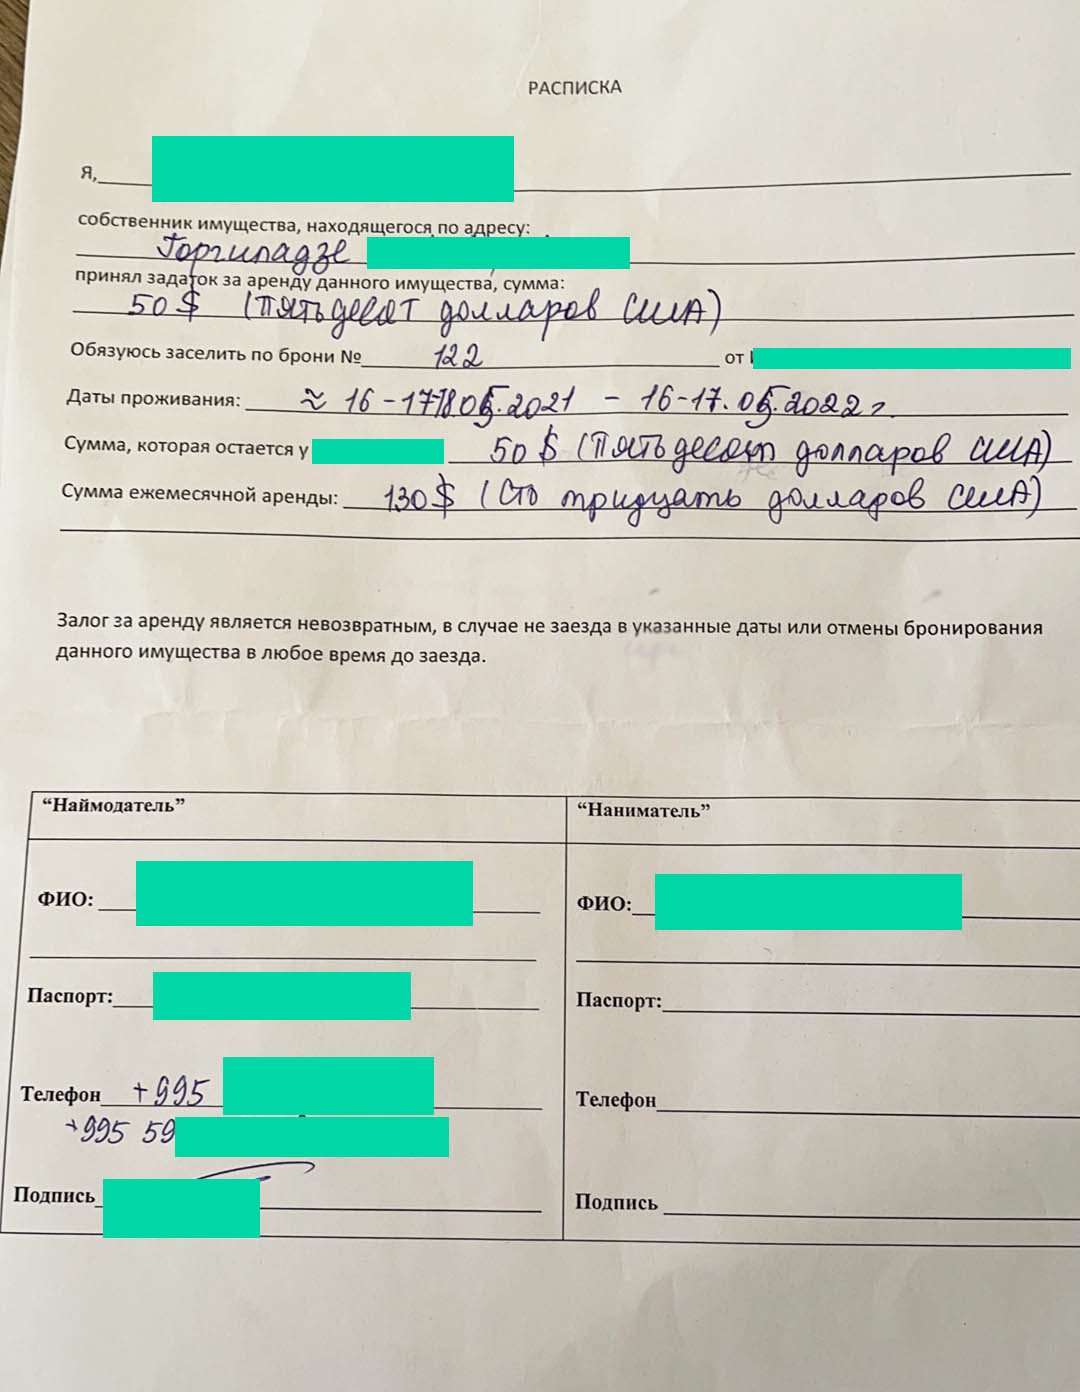 Пример расписки за получение задатка, чтобы по прилету в Батуми снять квартиру